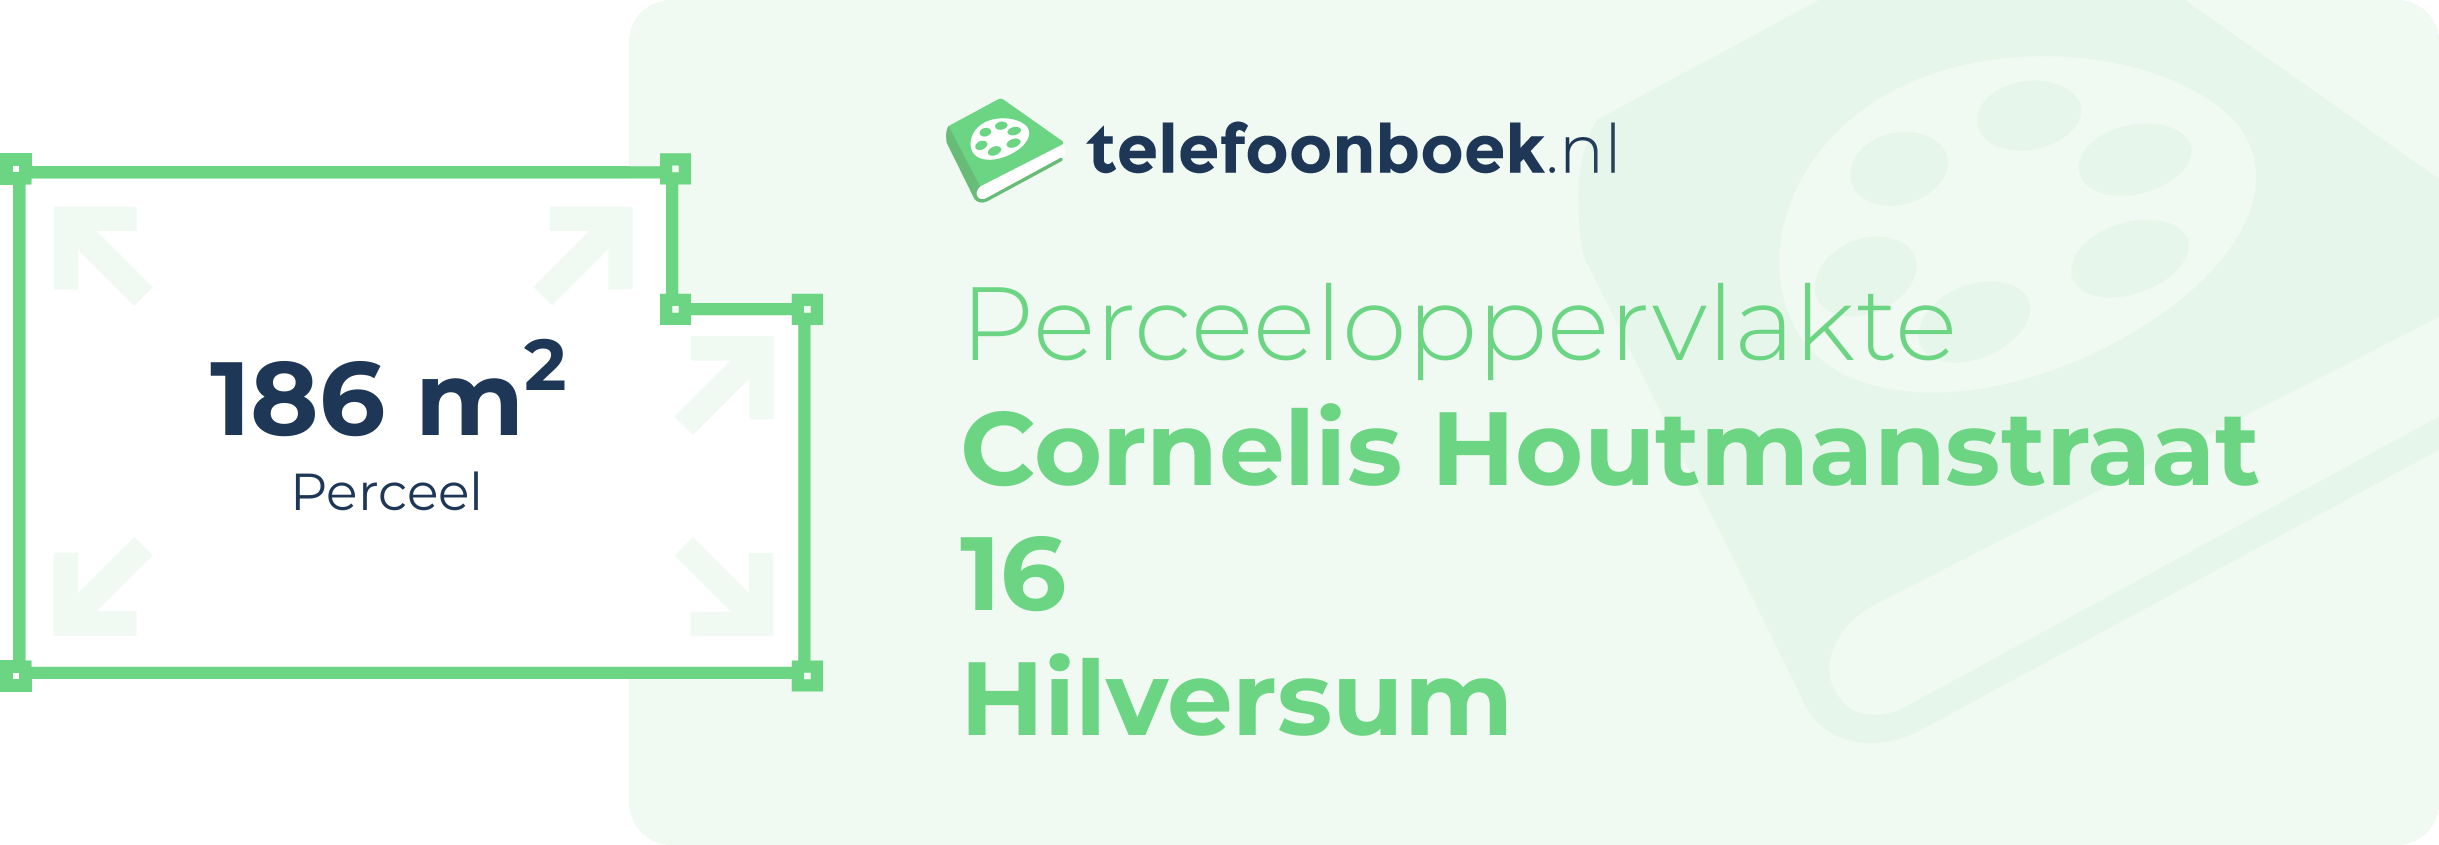 Perceeloppervlakte Cornelis Houtmanstraat 16 Hilversum